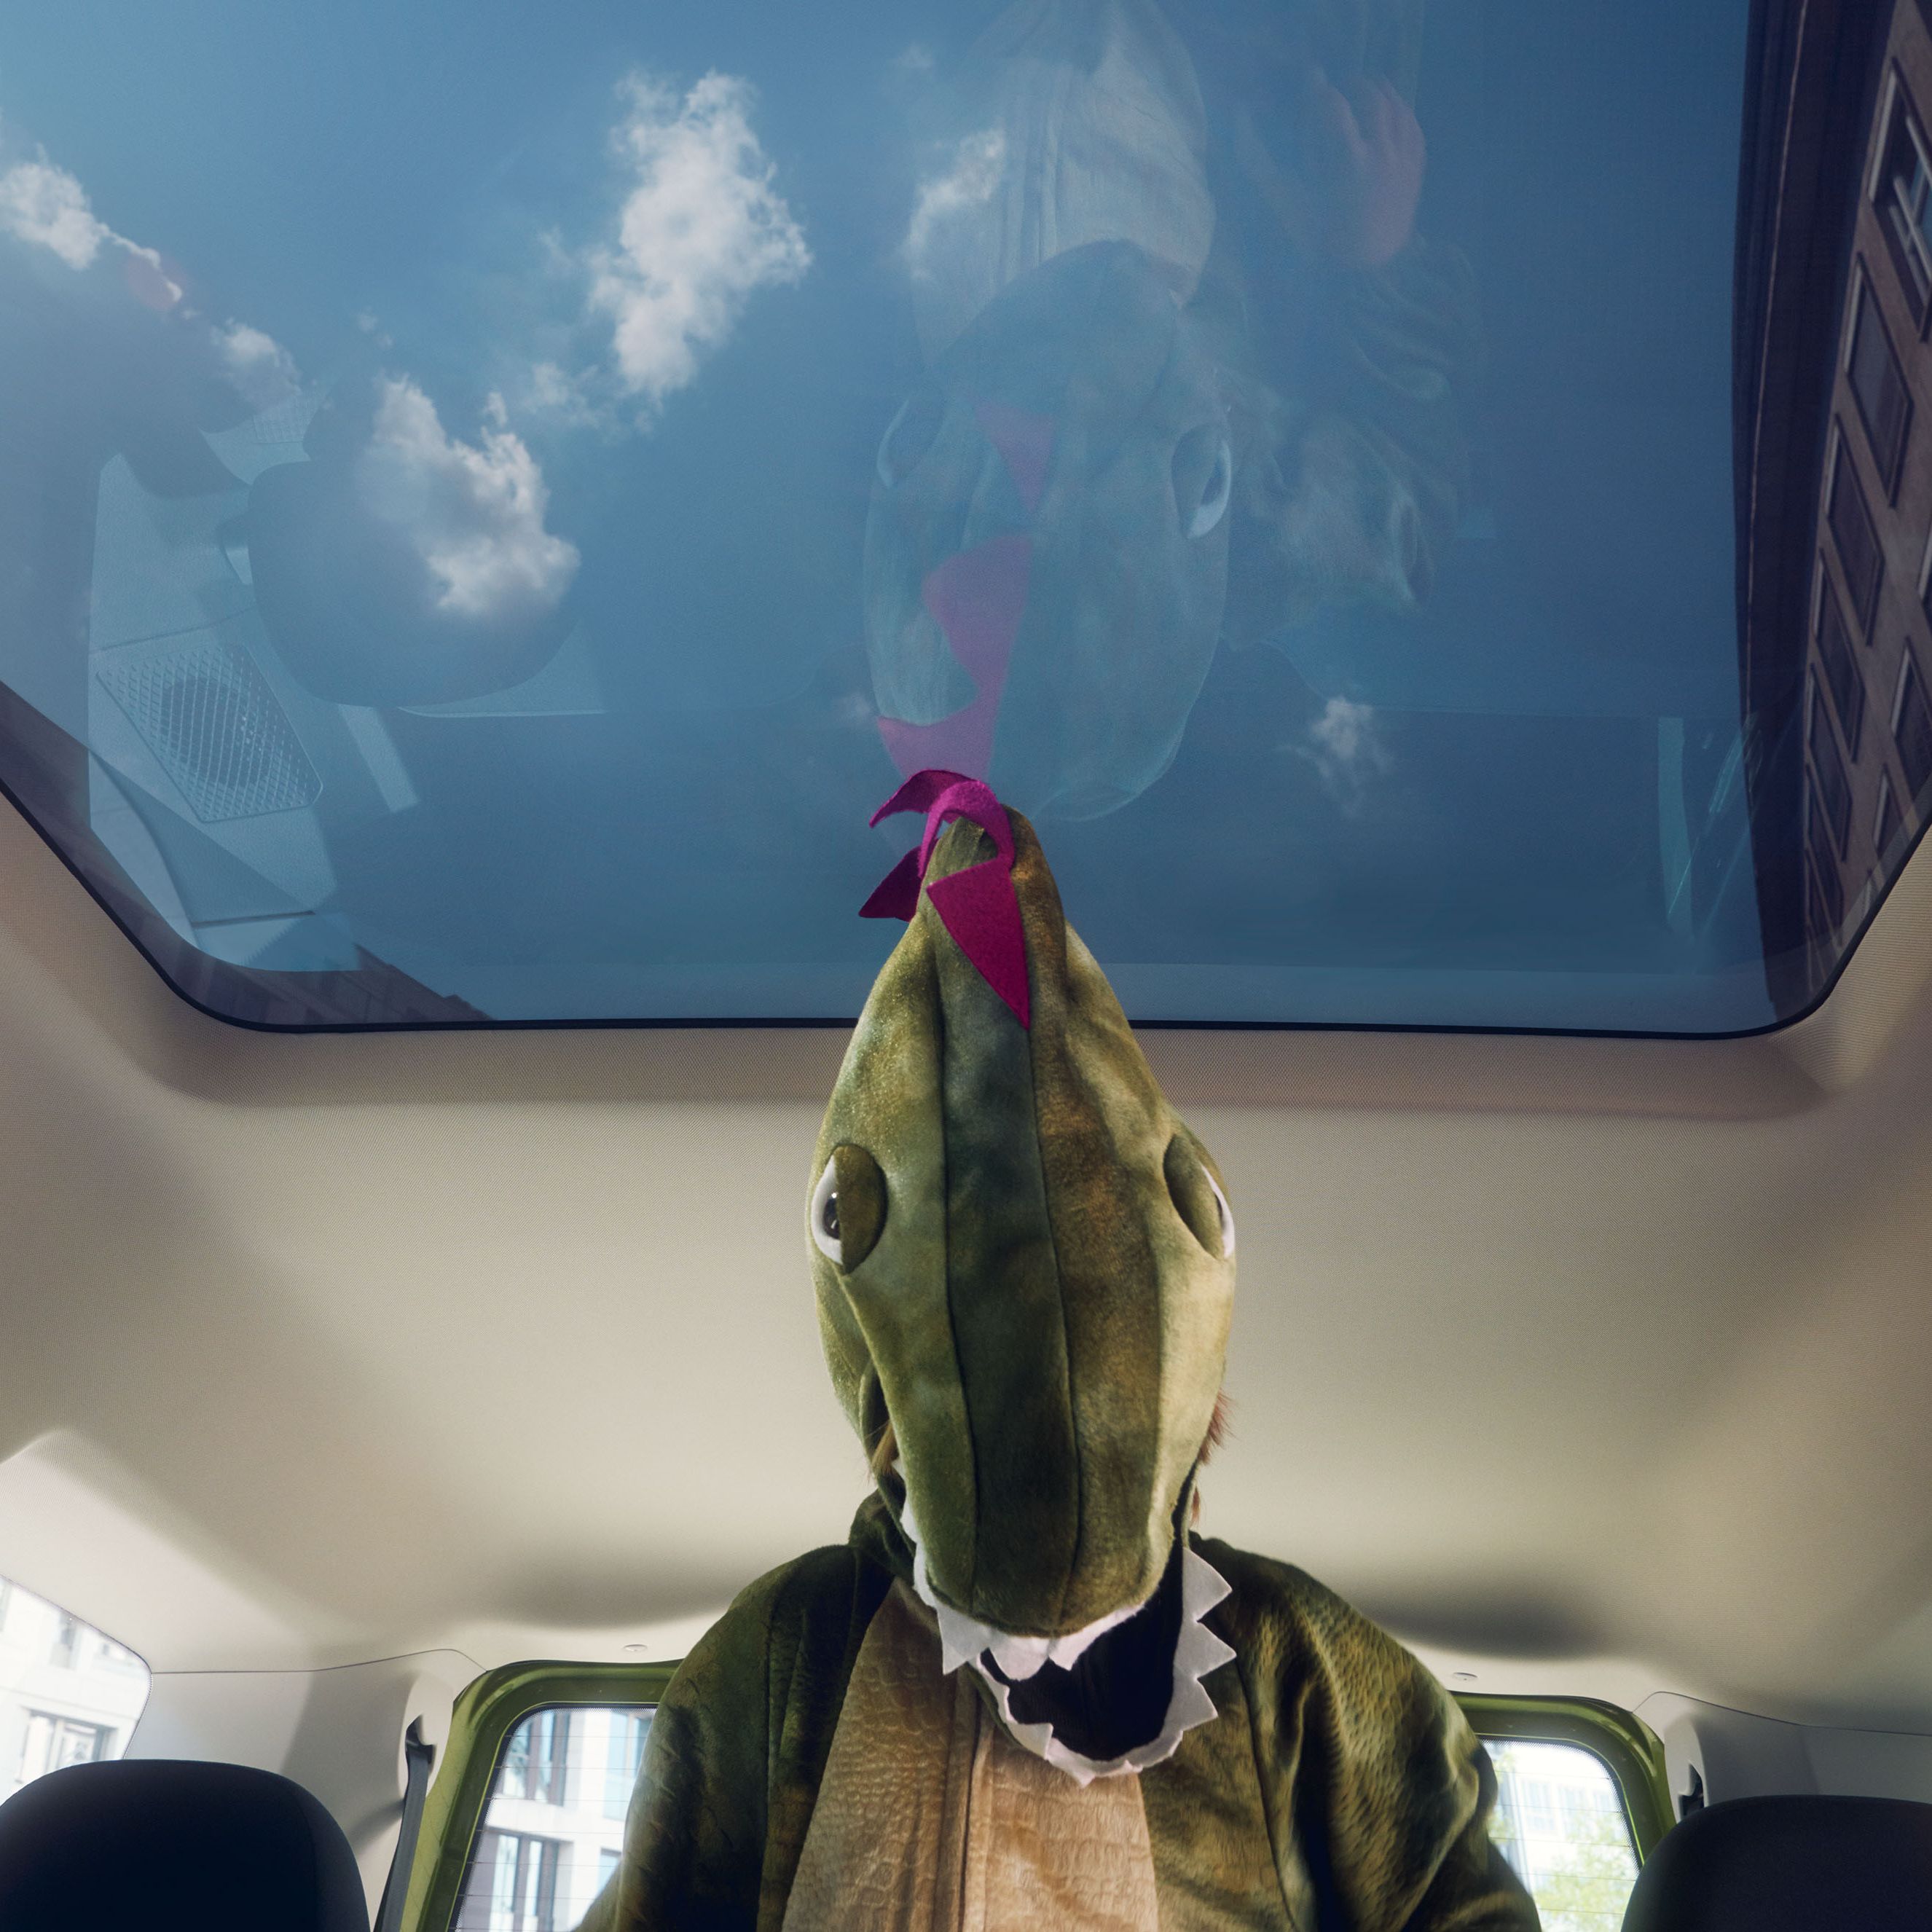 Eine Frau sitzt in einem VW Caddy. Zu sehen ist der Innenraum und die Digitalanzeigen.